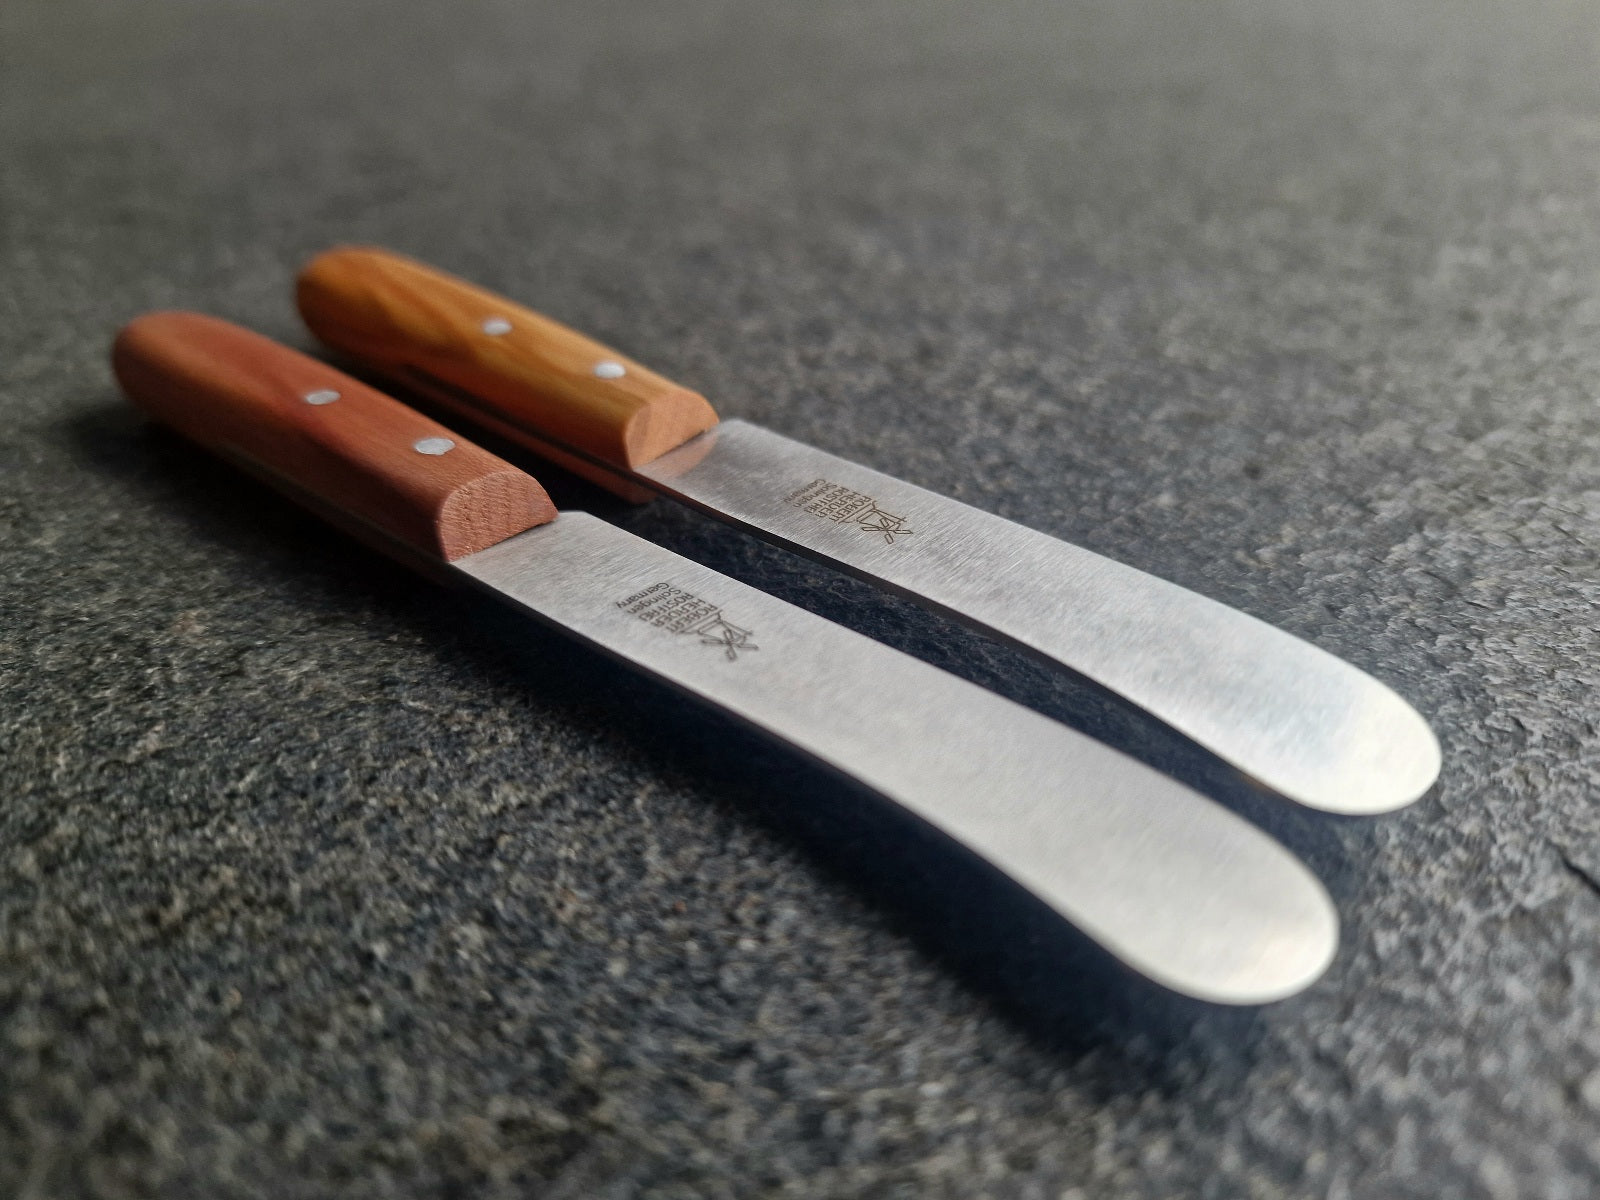 Messer für Kräuterbutter und Butterboard Gerichte. Die Klinge im Detail.